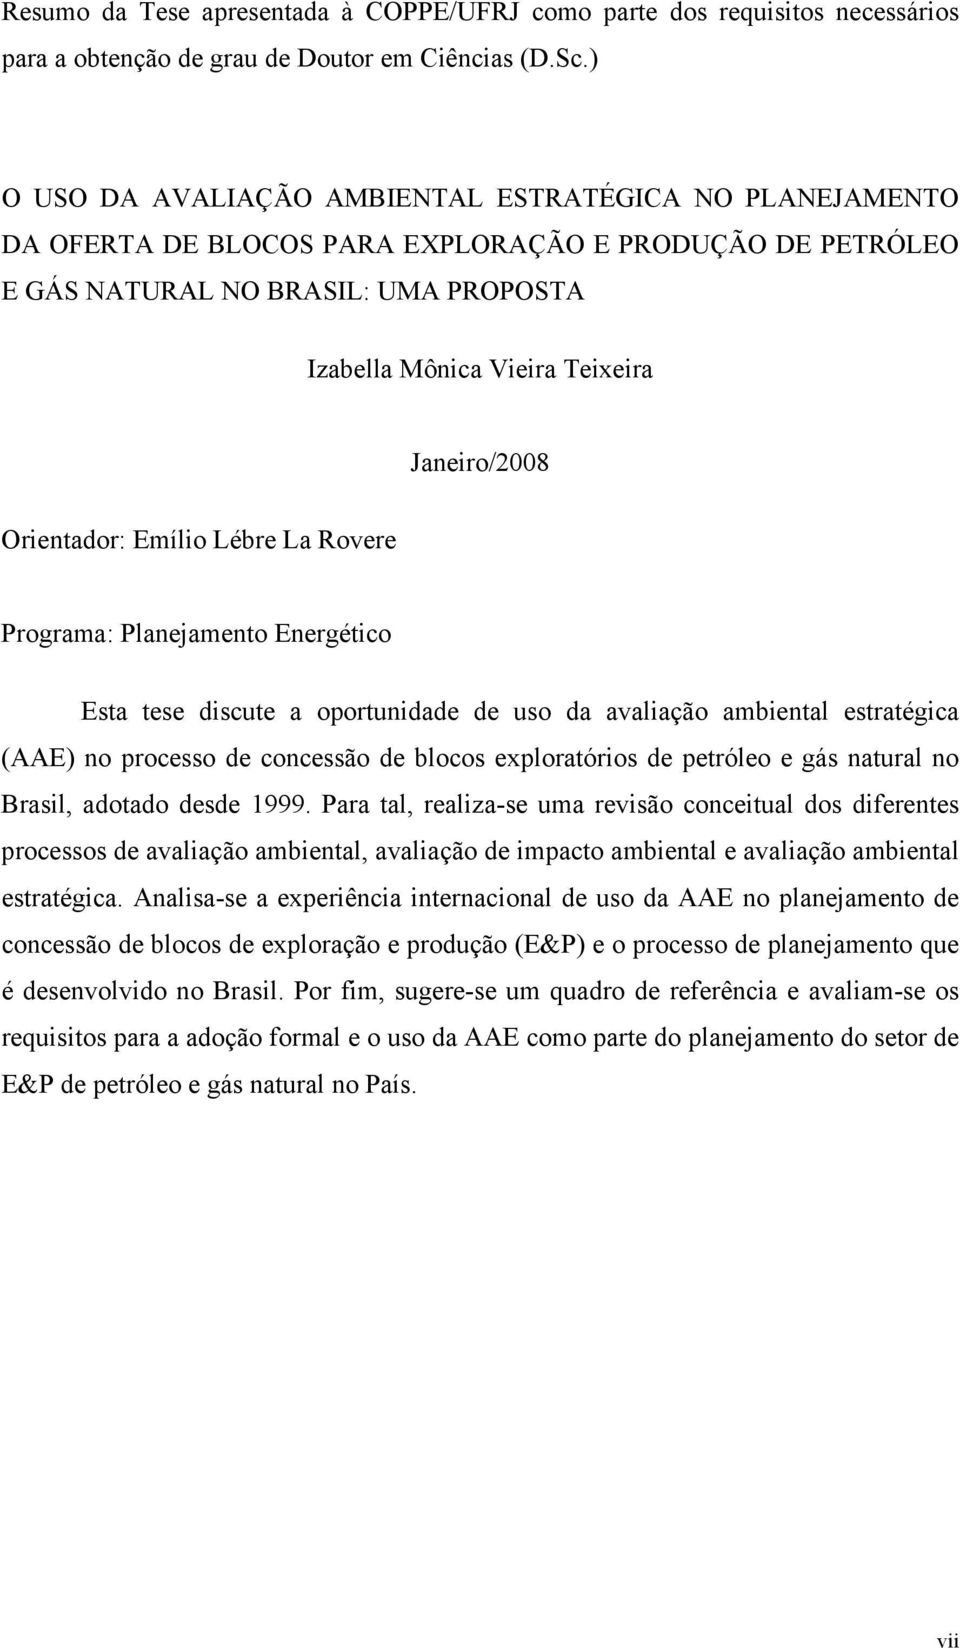 Janeiro/2008 Orientador: Emílio Lébre La Rovere Programa: Planejamento Energético Esta tese discute a oportunidade de uso da avaliação ambiental estratégica (AAE) no processo de concessão de blocos